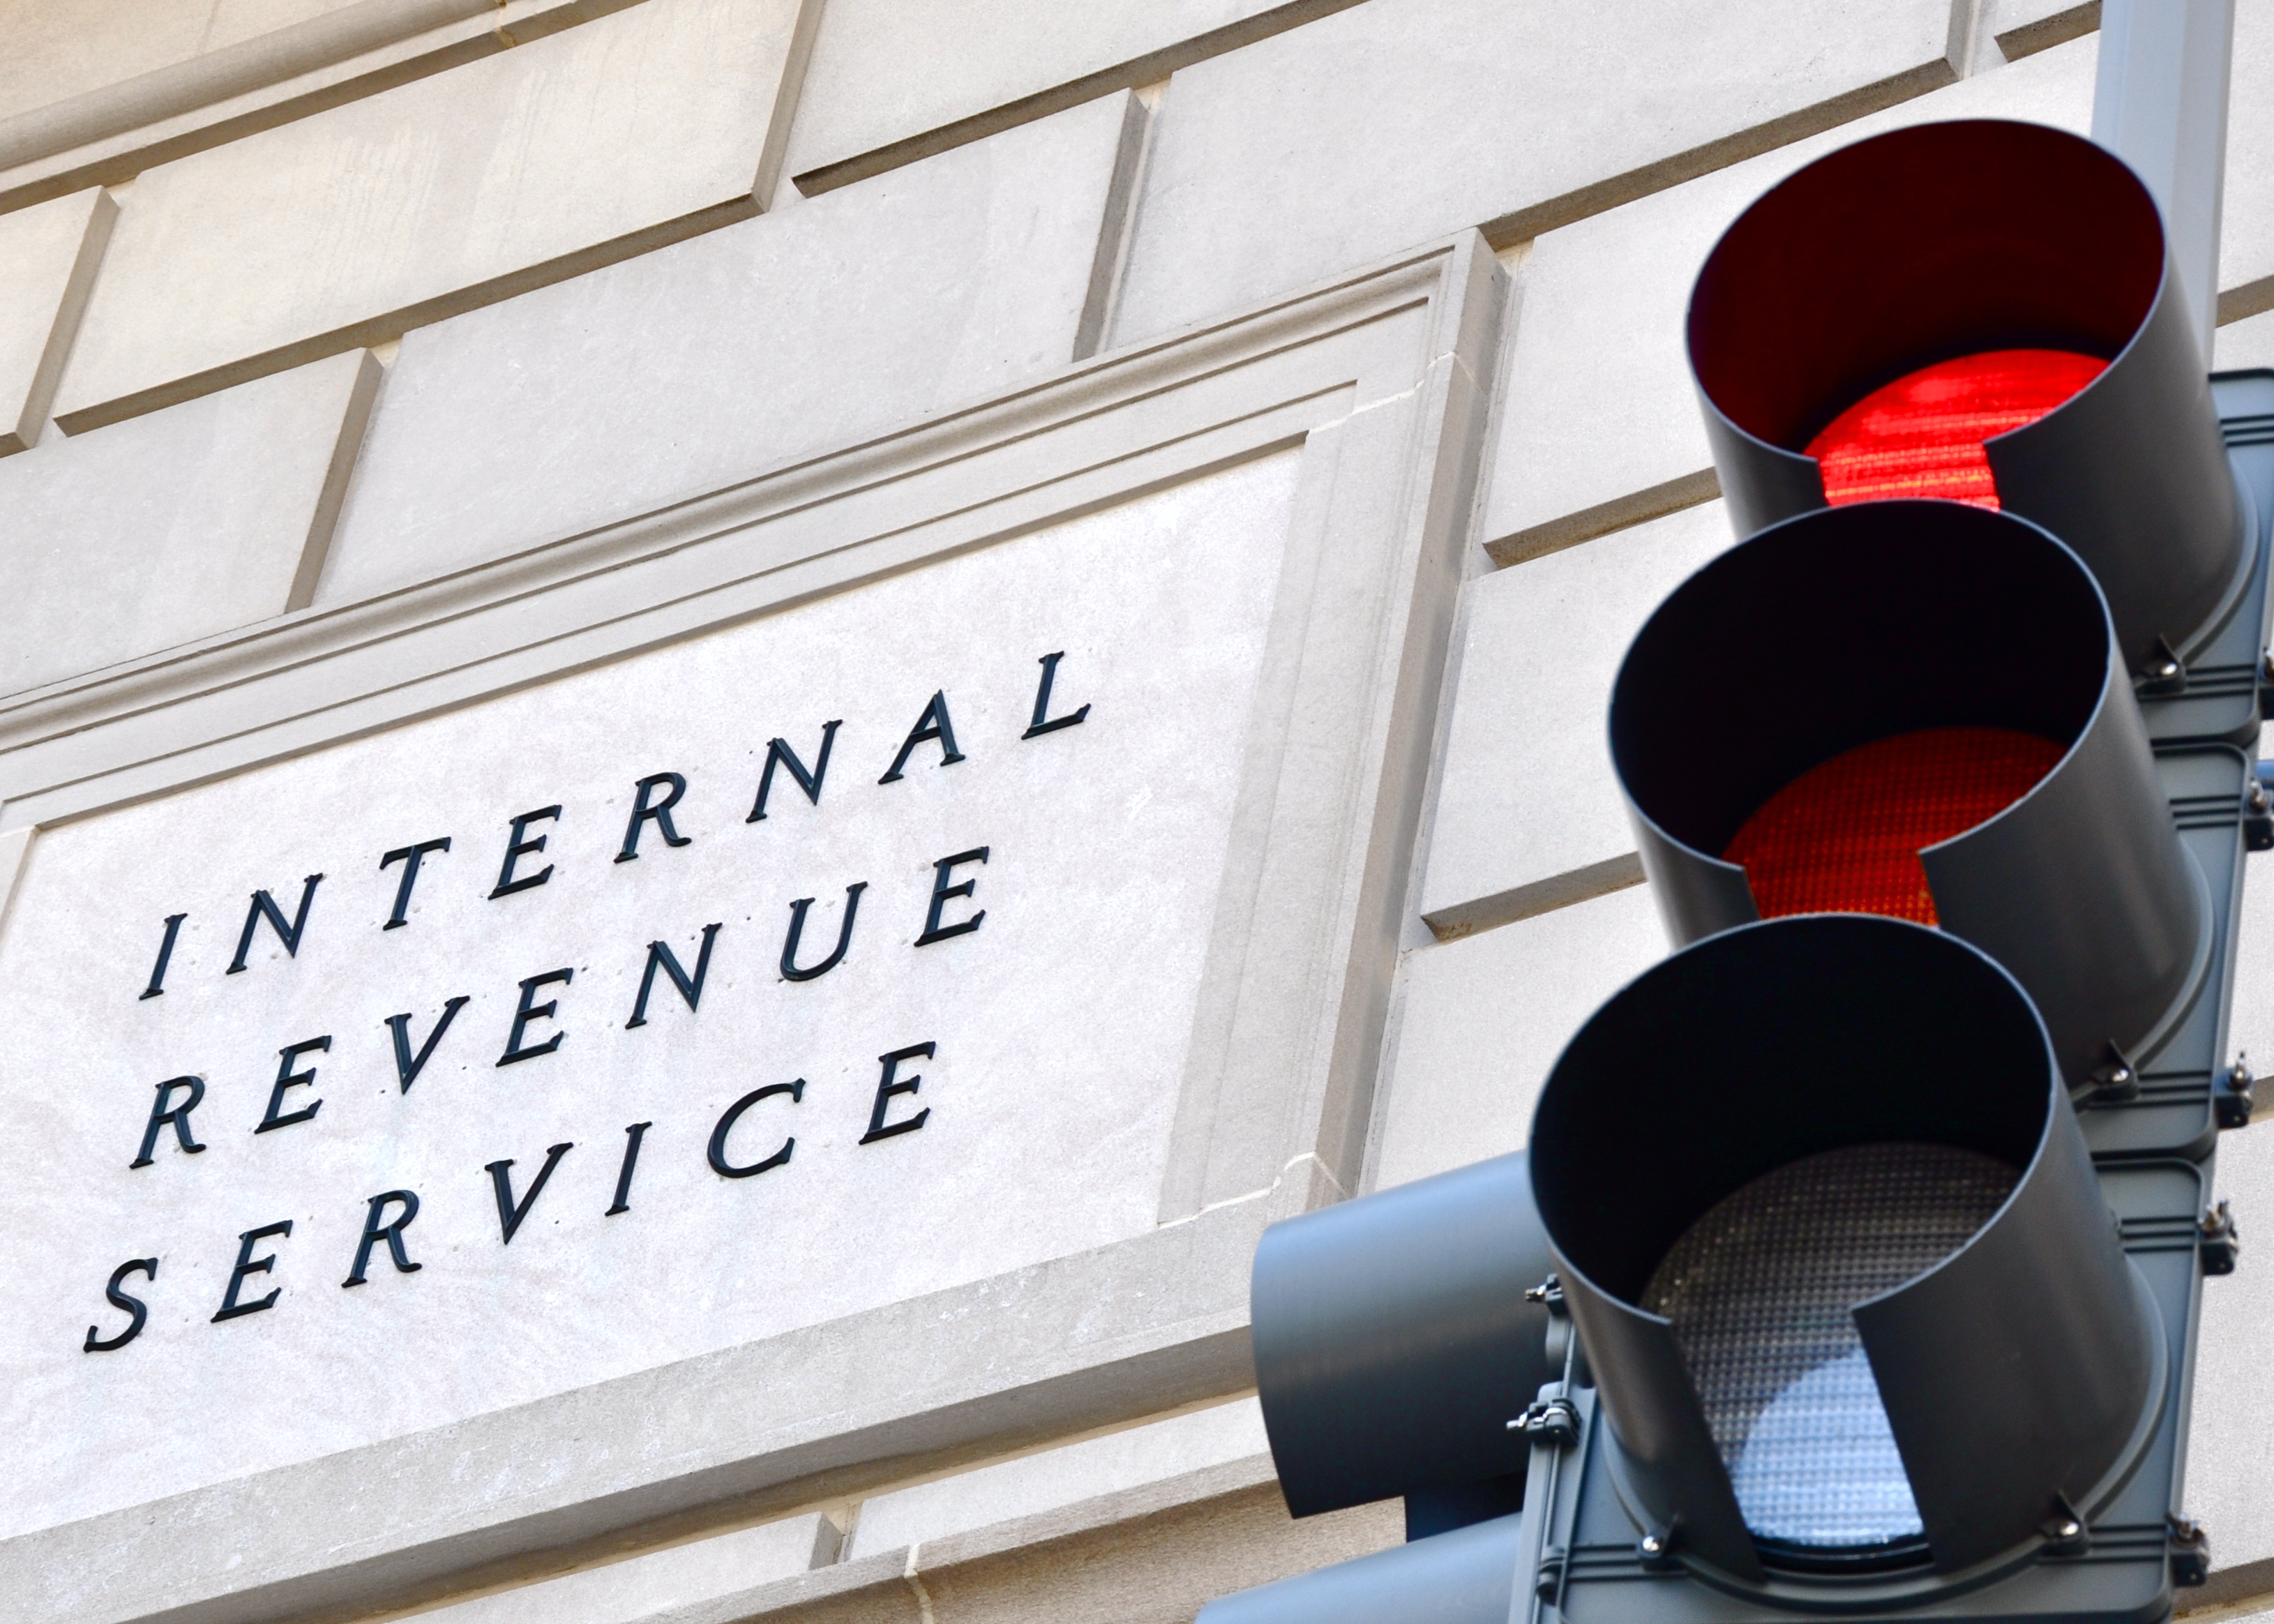 IRS a “poche settimane da 3 chiarimenti sulle tasse” dopo la richiesta di attivisti pro-cripto